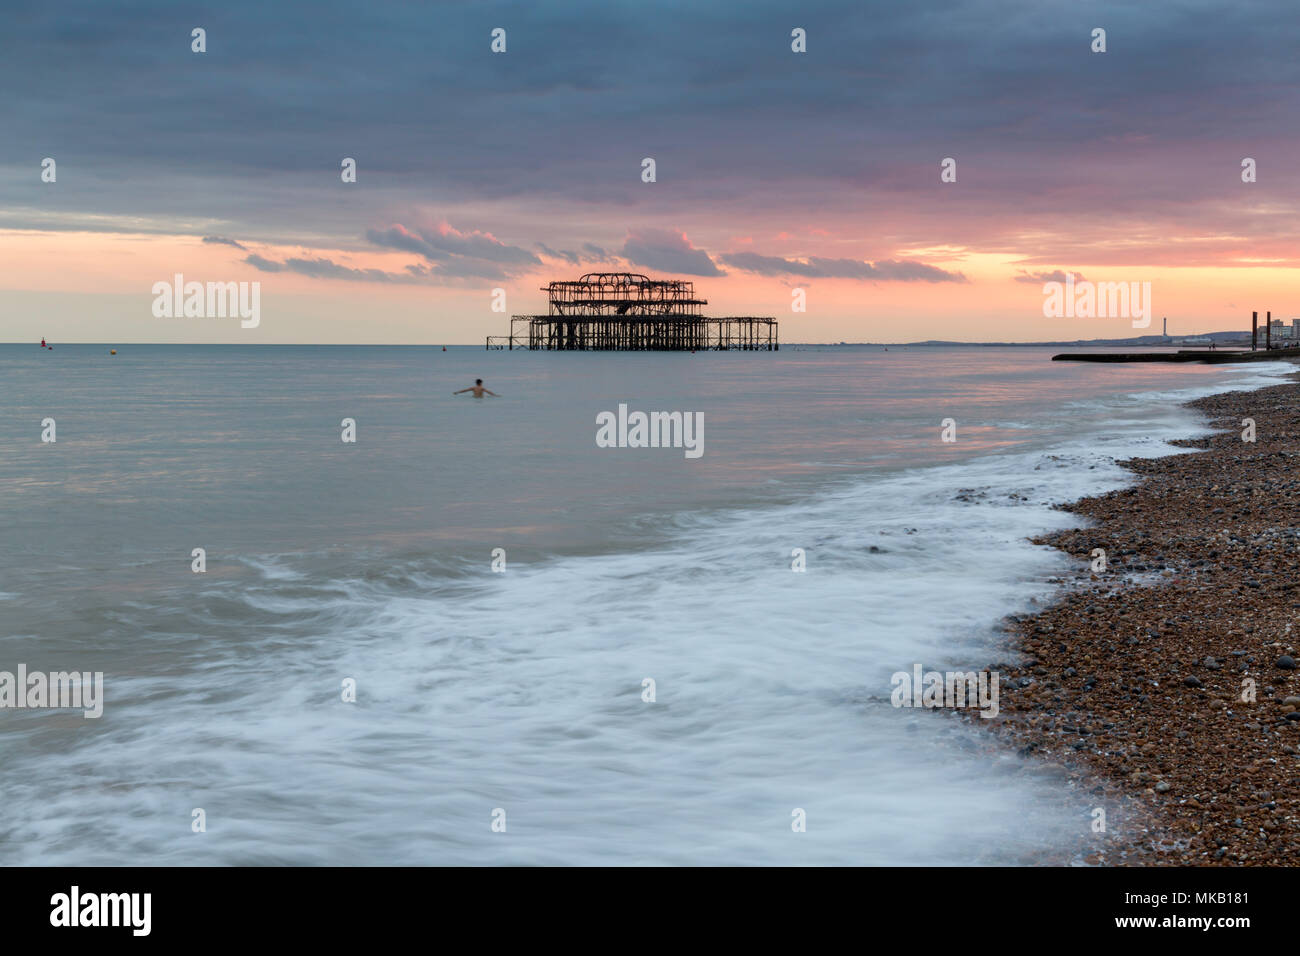 Nuotatore solitario davanti al Molo di Ponente, Brighton East Sussex, Regno Unito durante un mese di luglio il tramonto. Foto Stock